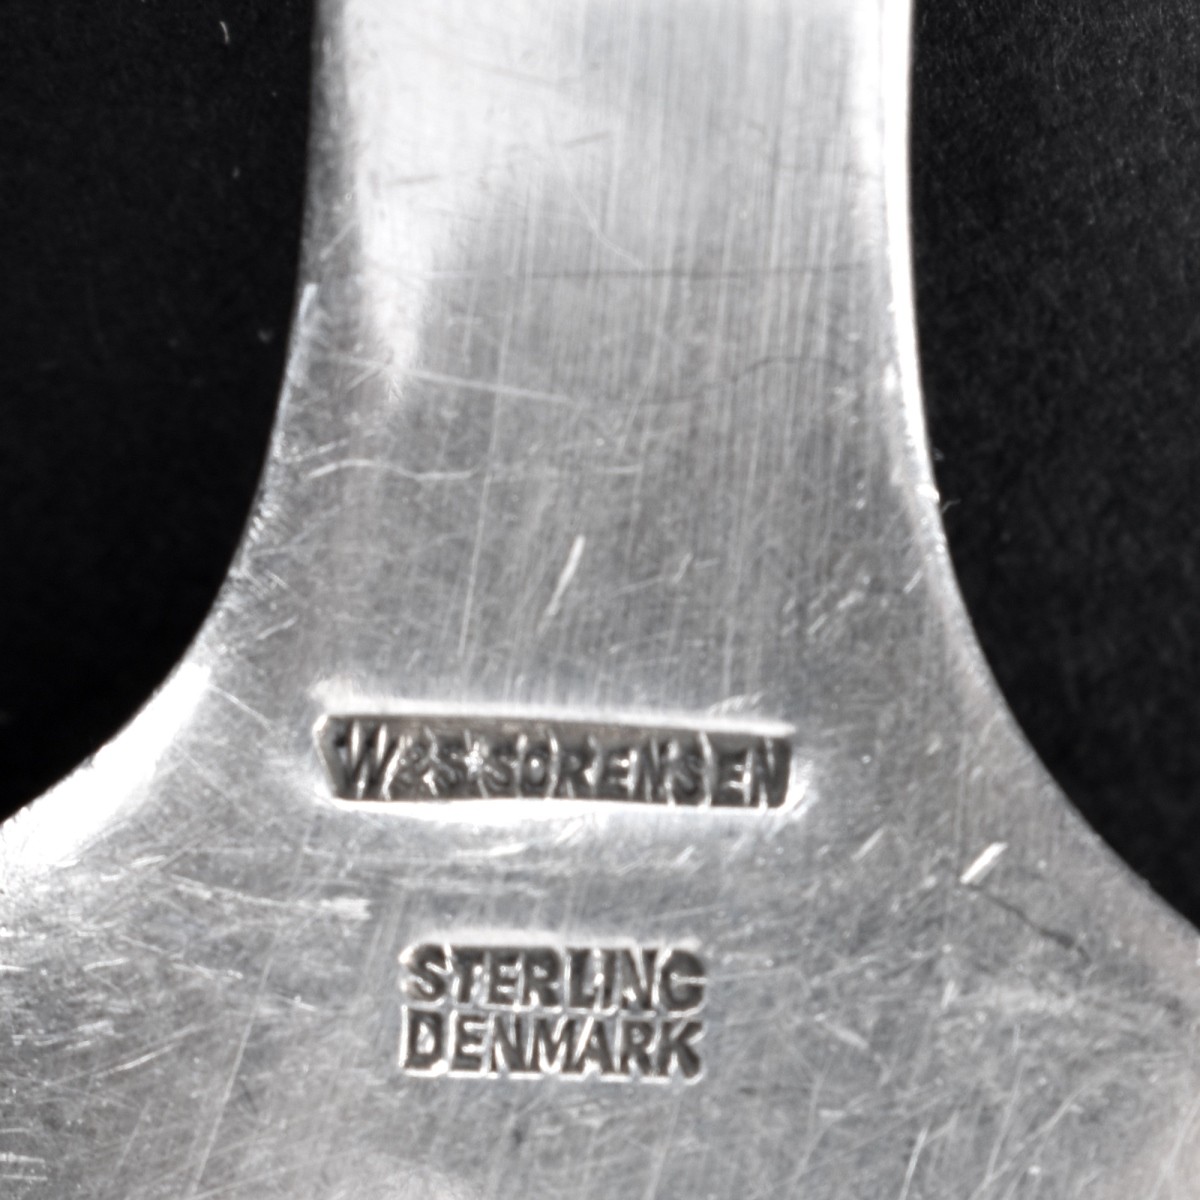 Two (2) Danish Sterling Silver Flatware